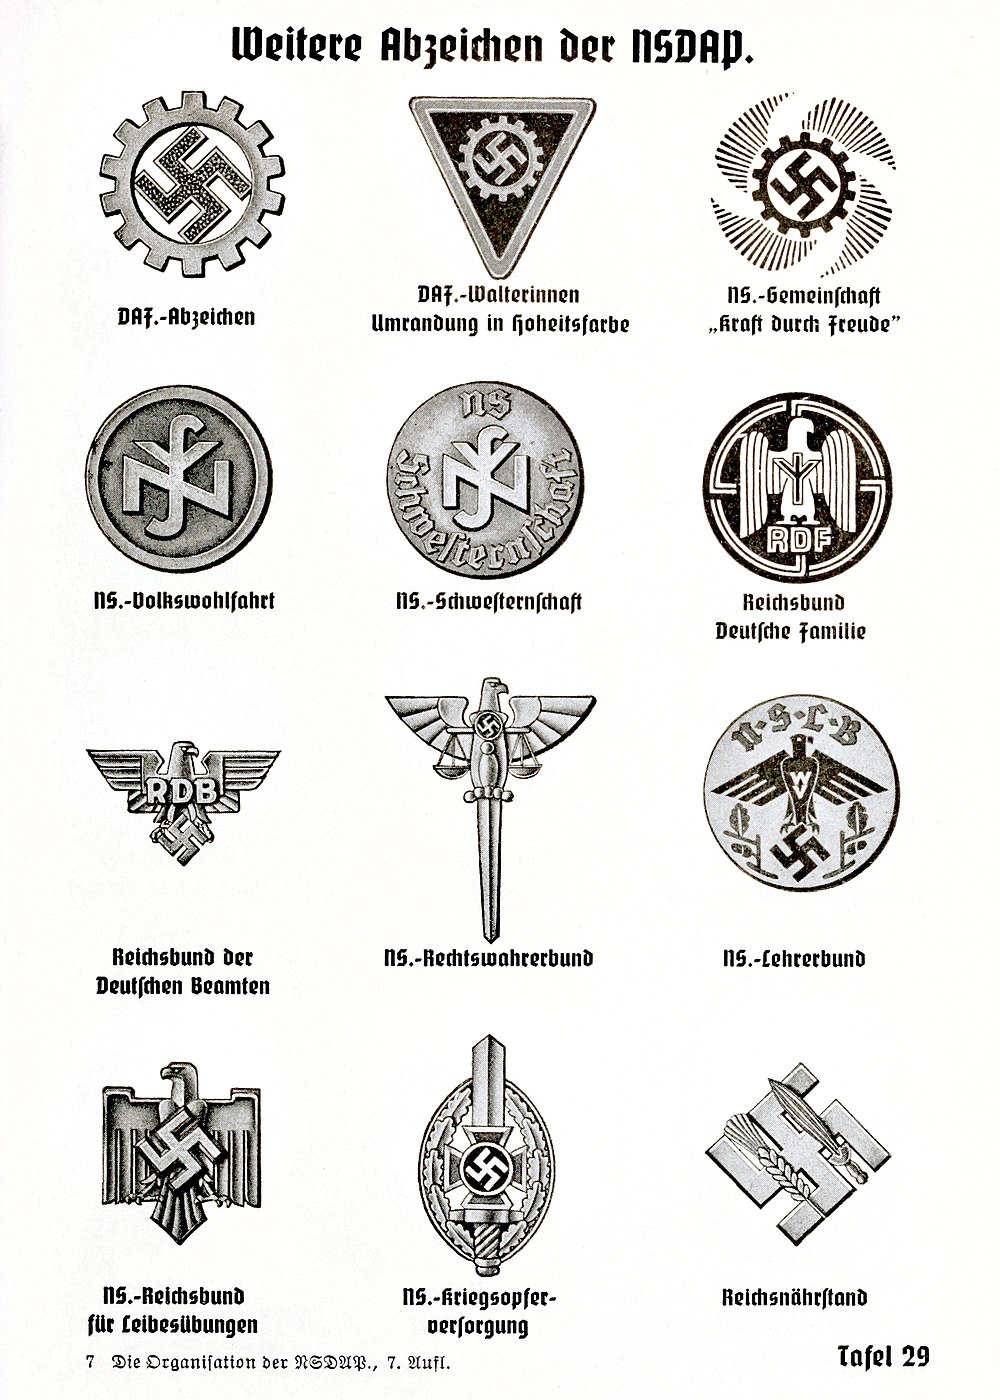 Emblem of the Reichsbund der Deutschen Beamten (RDB), from Organisationsbuch der NSDAP 1943